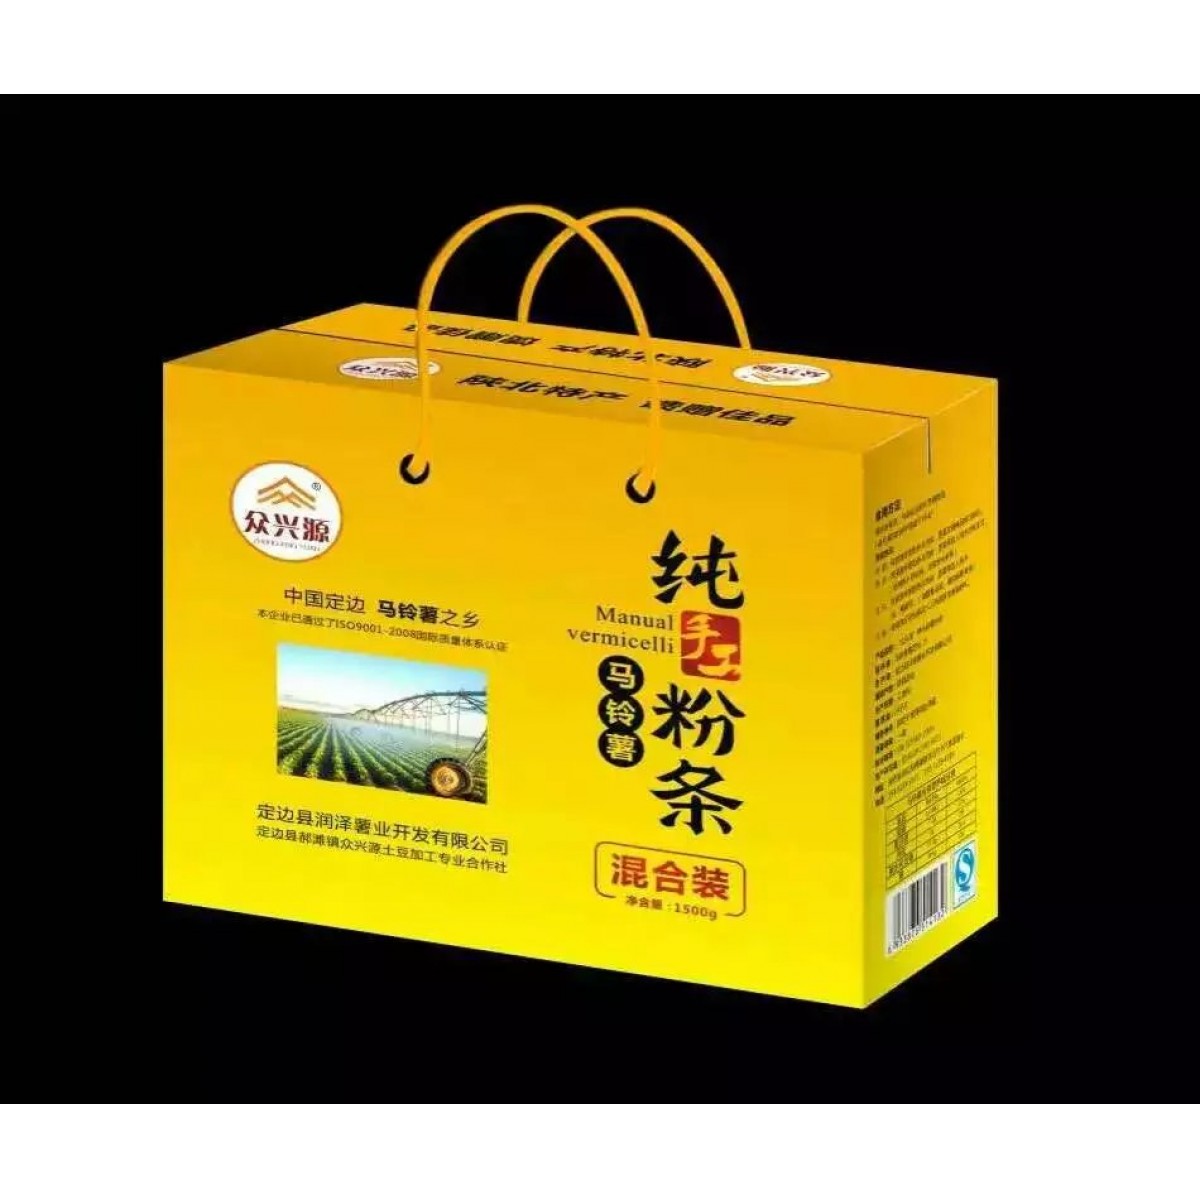 【榆林扶贫馆】定边县 众心源 纯手工马铃薯粉条 混合装礼盒1.5kg